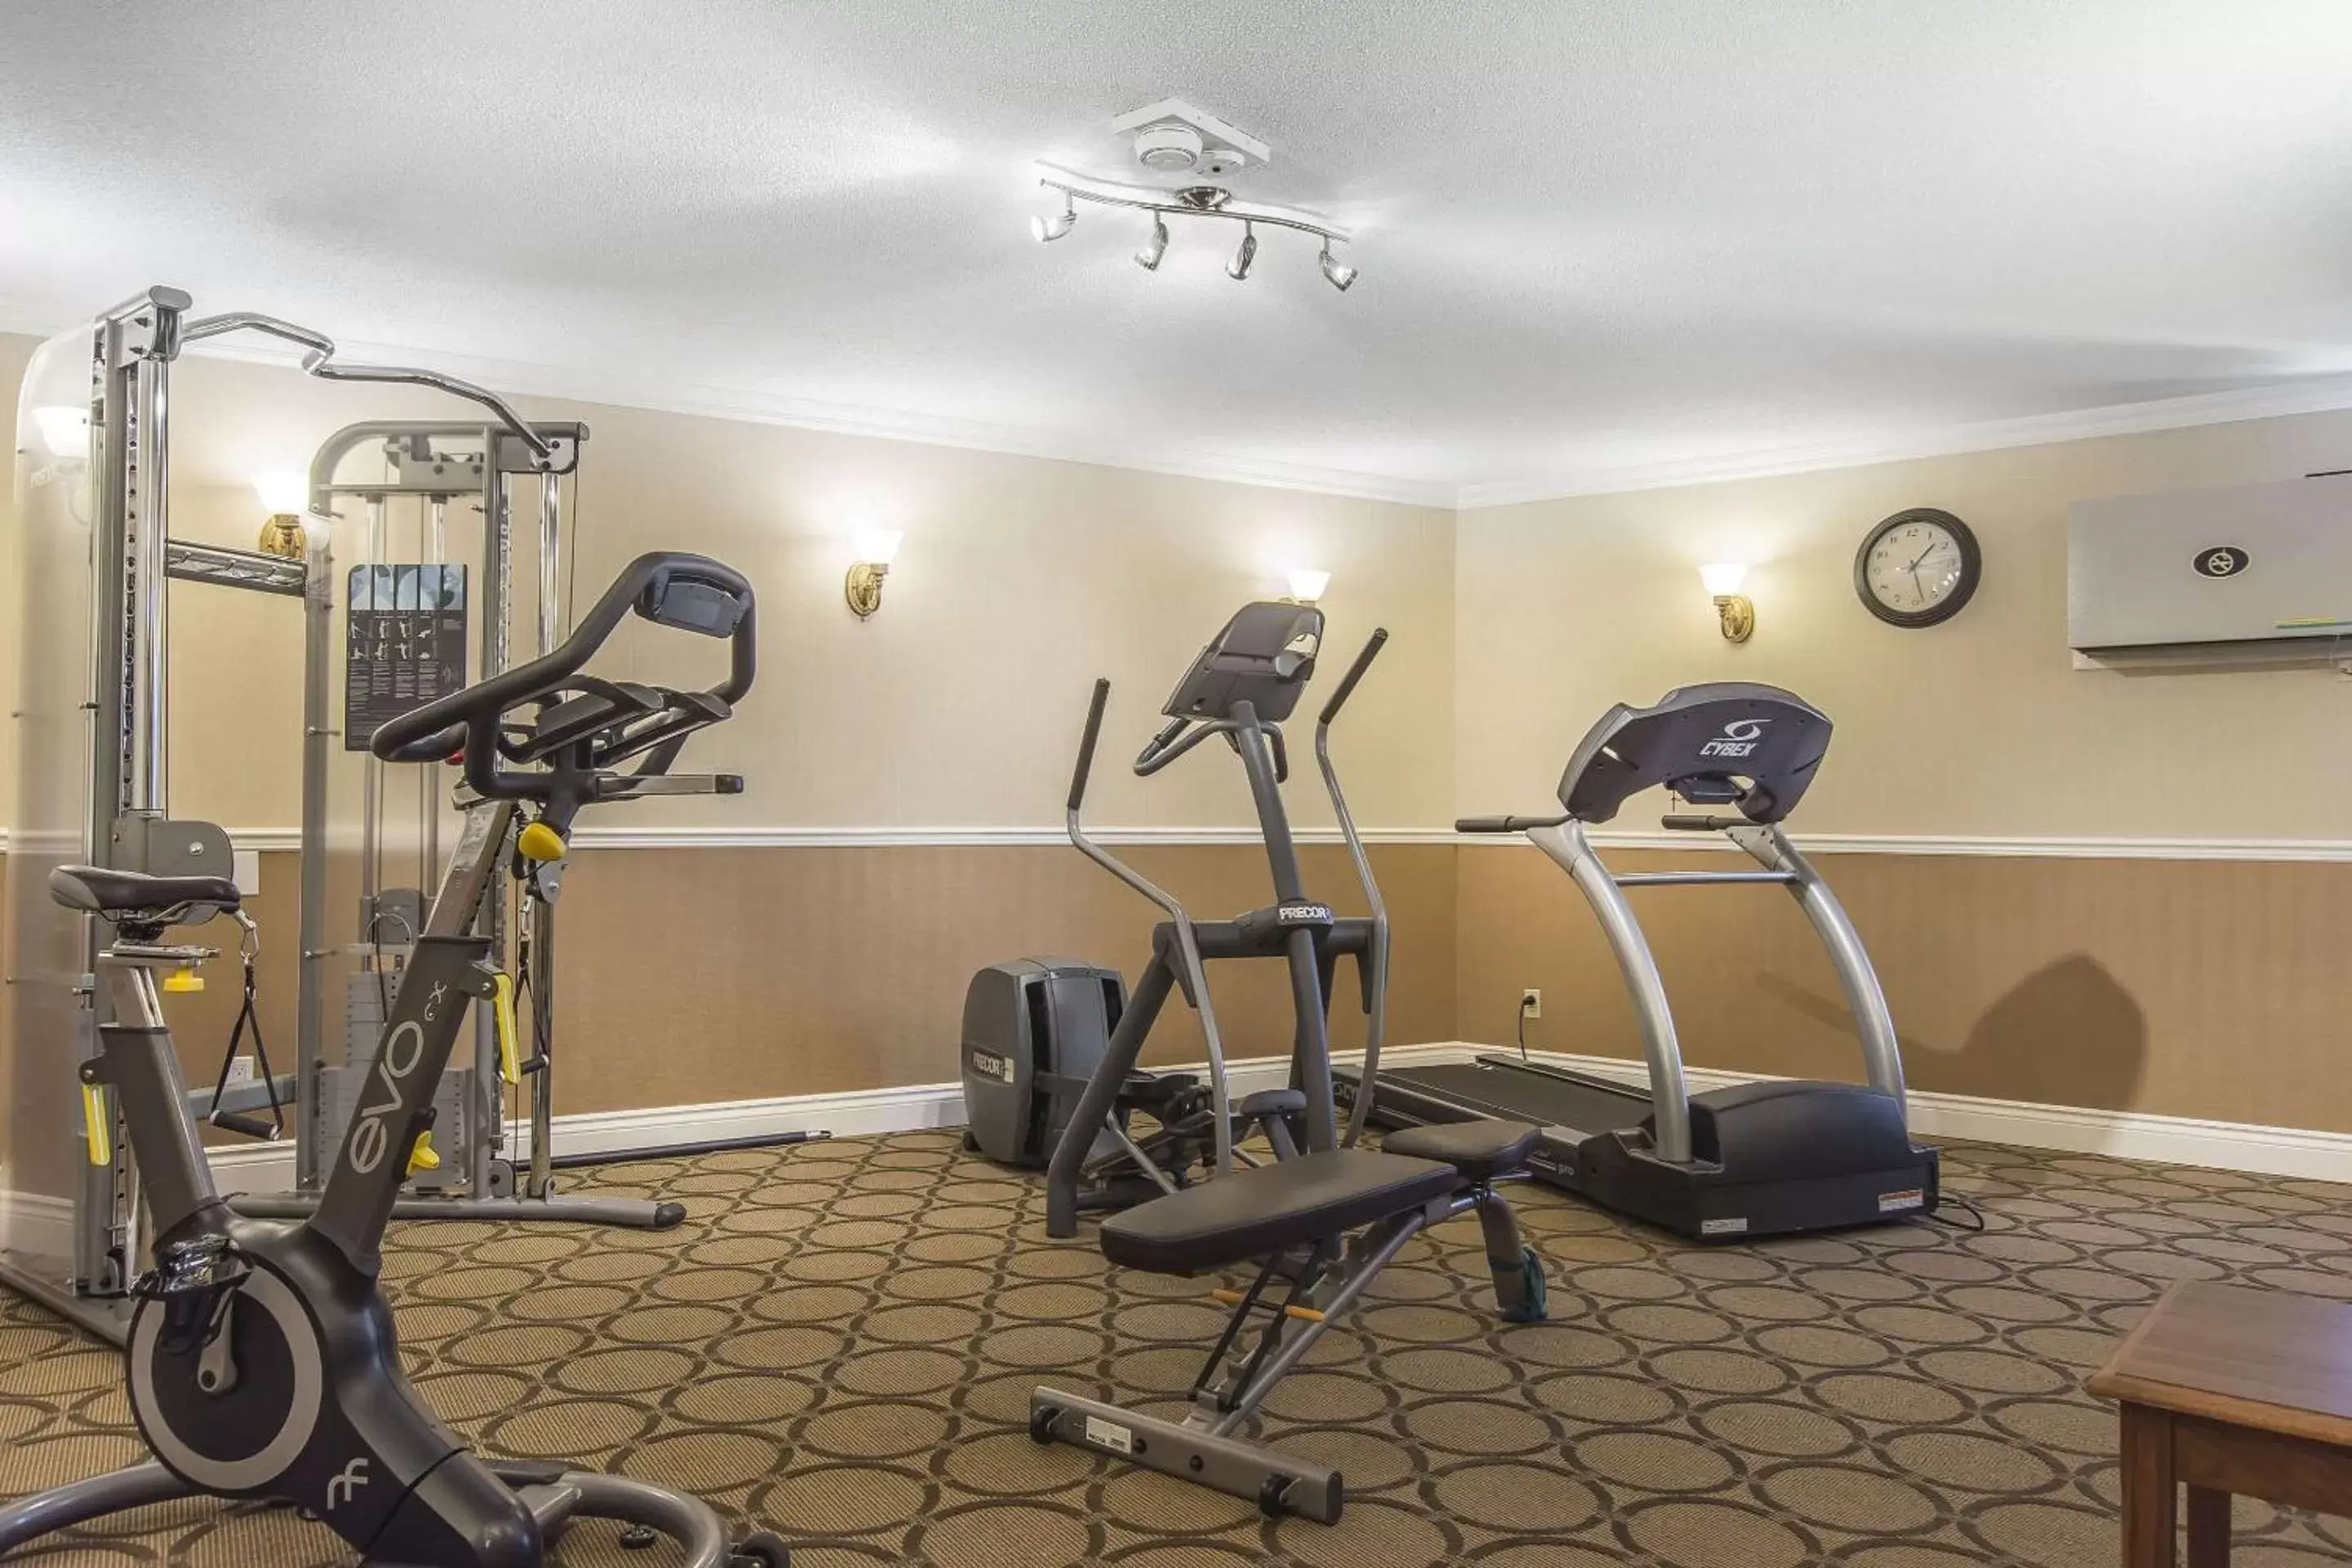 Fitness centre/facilities, Fitness Center/Facilities in Comfort Inn Kapuskasing